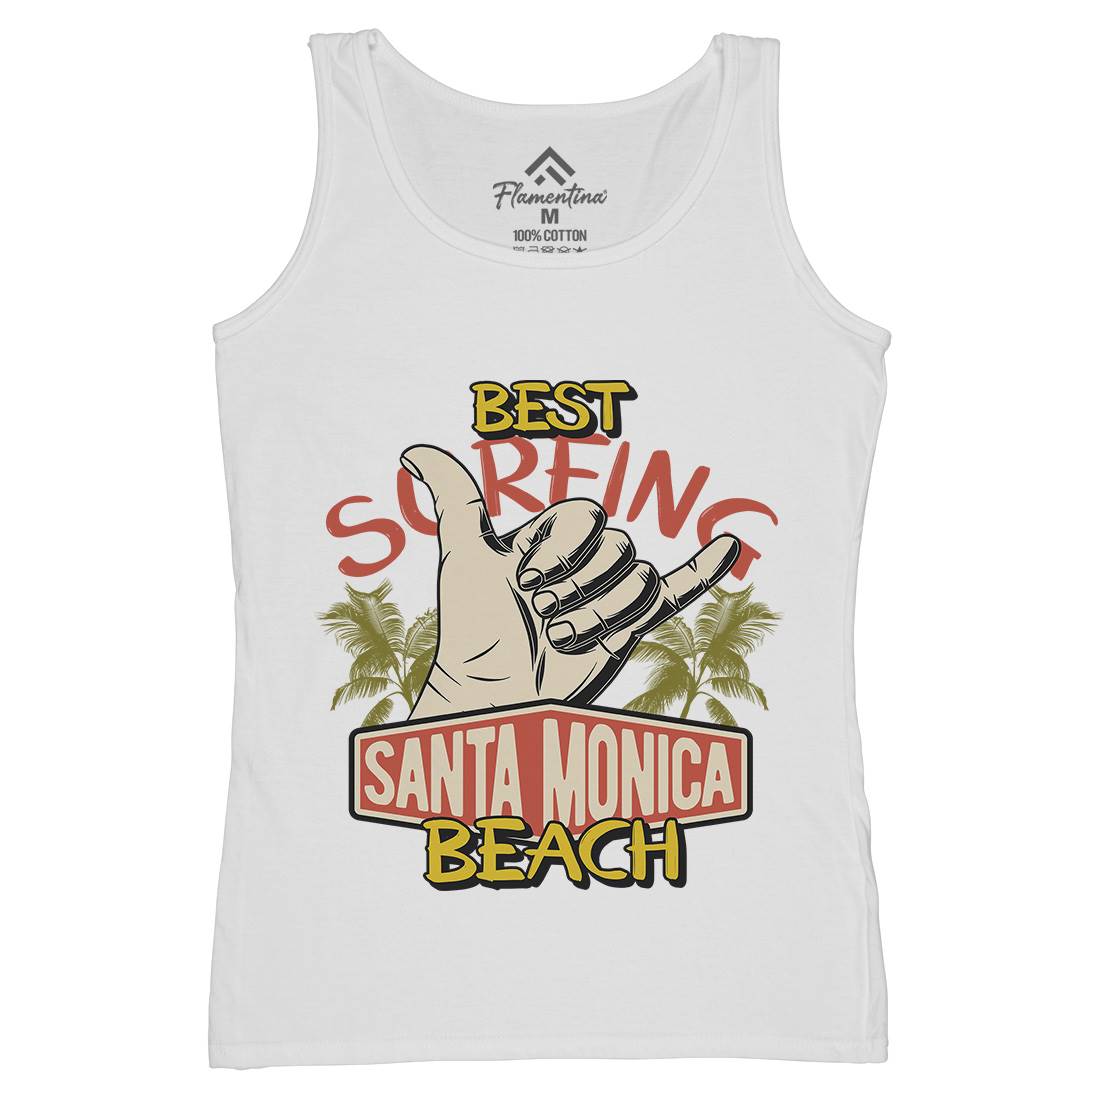 Best Surfing Beach Womens Organic Tank Top Vest Surf D909